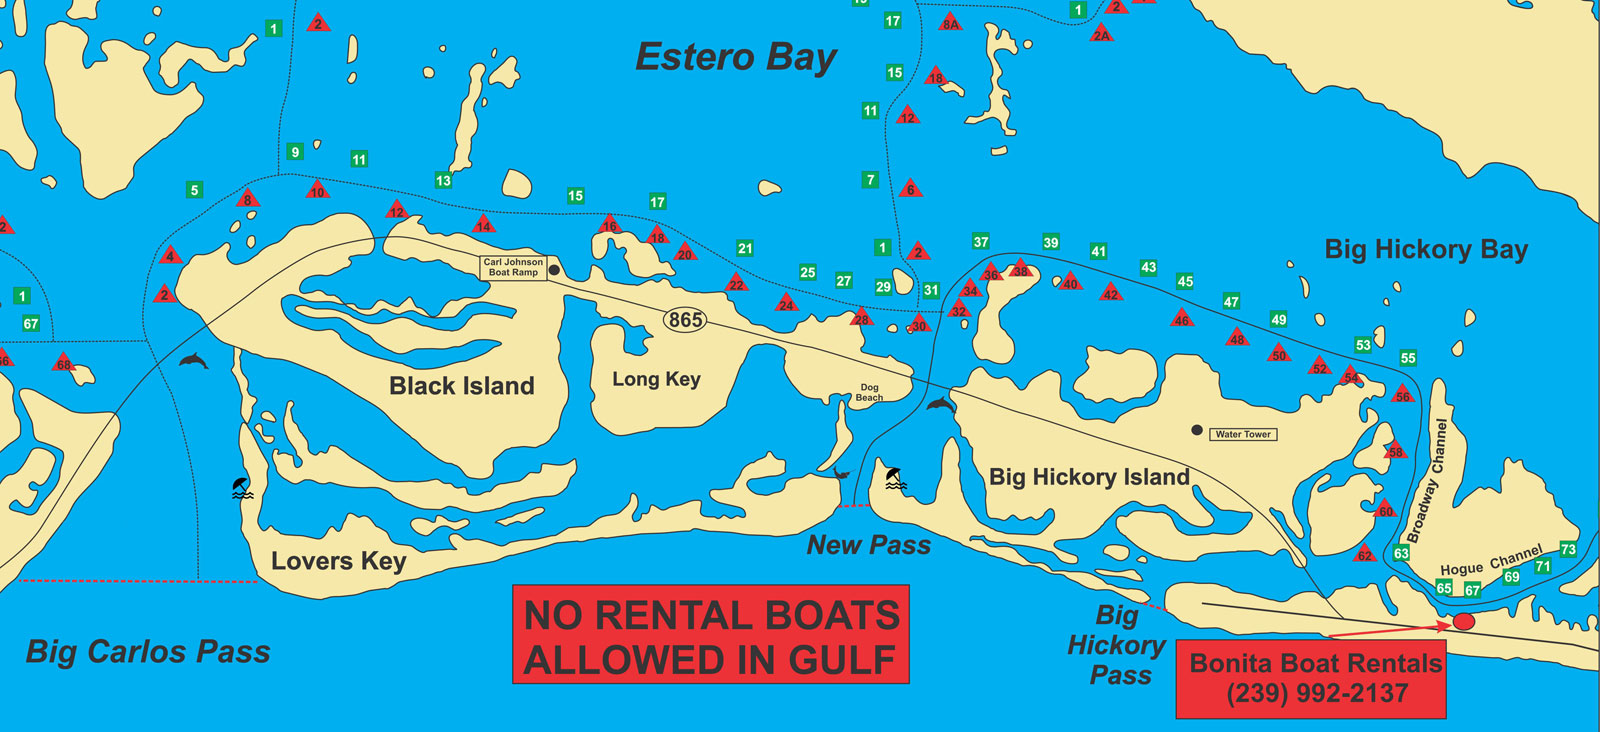 Map of Estero Bay